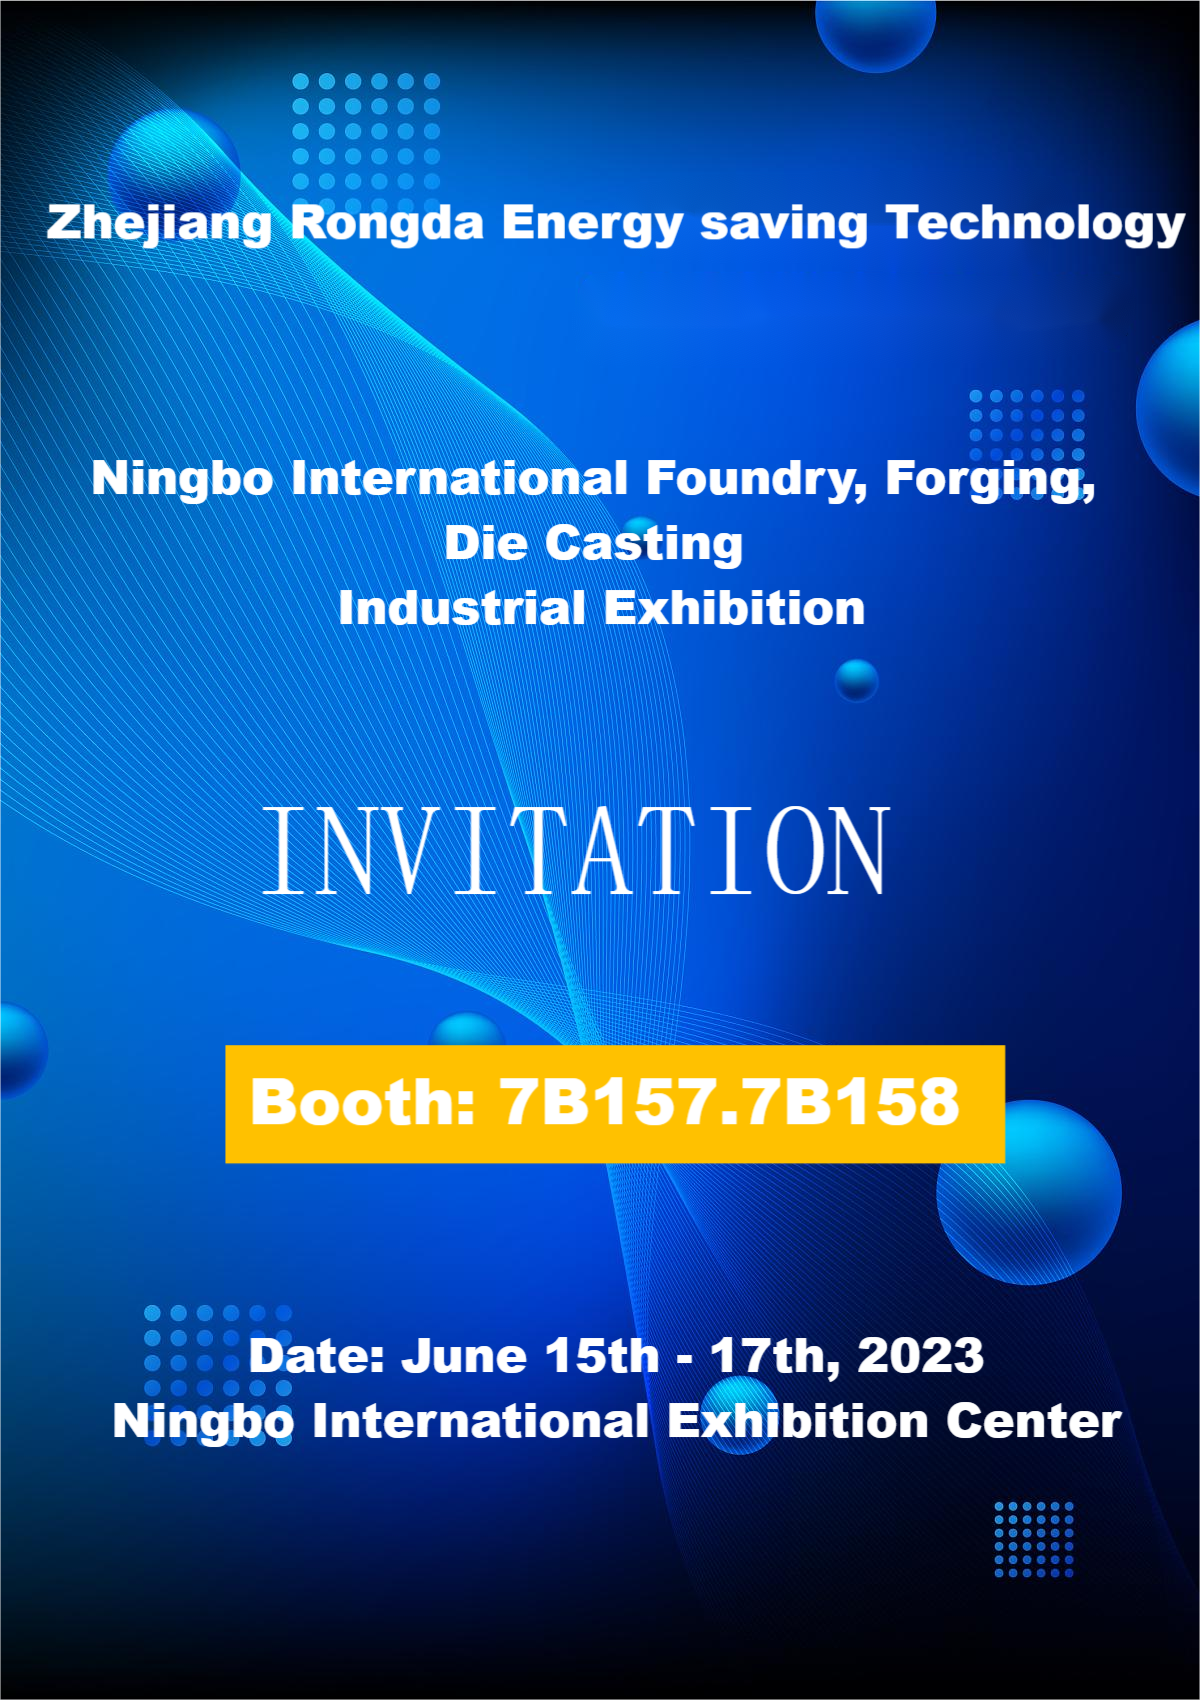 Придружете ни се на меѓународната изложба за леење, фалсификување и кастинг во Нингбо!